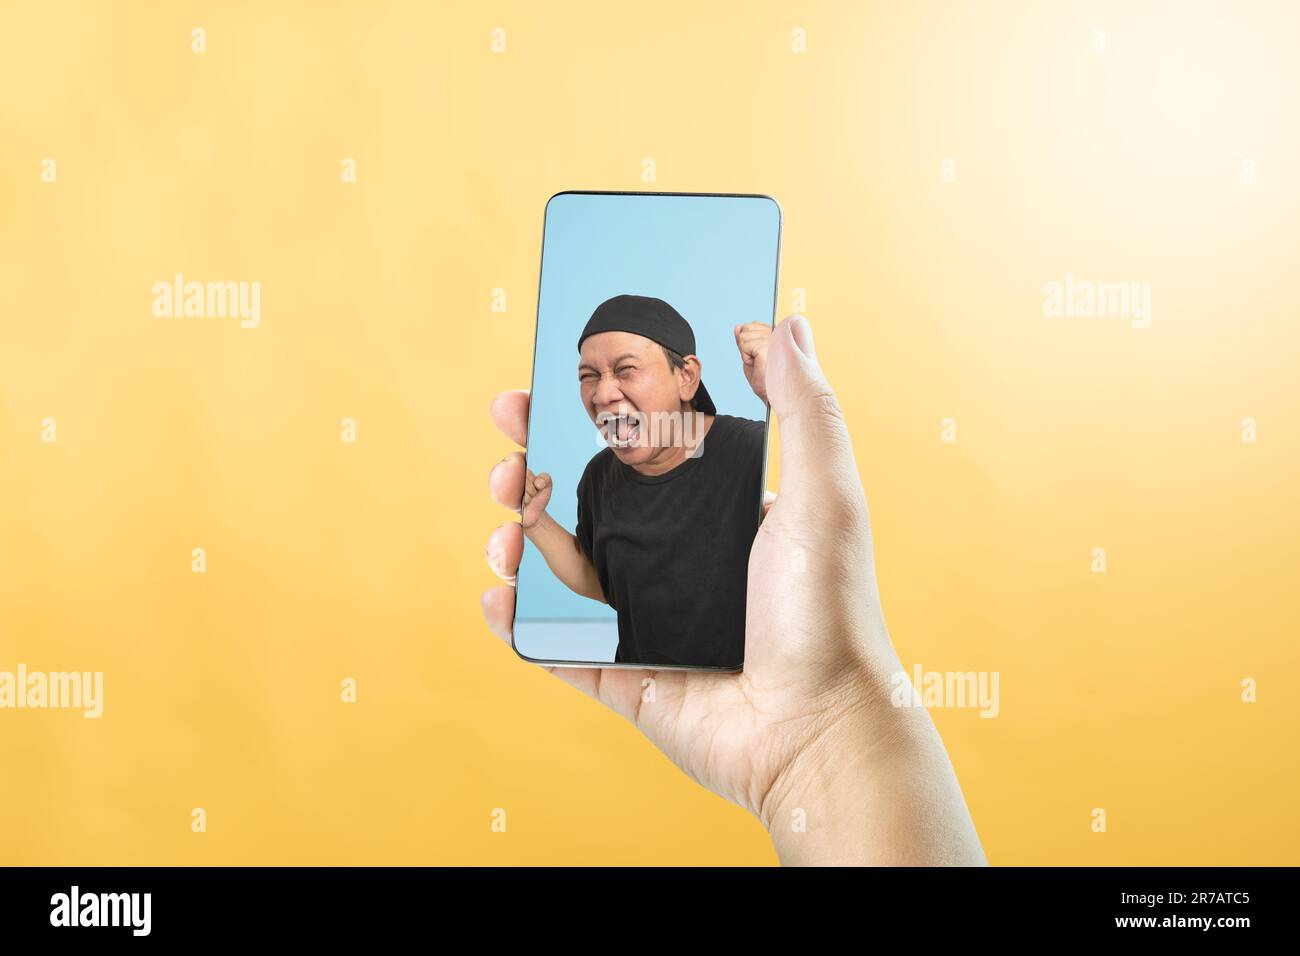 Portrait d'un homme asiatique avec une expression faciale excitée sur l'écran du téléphone portable. Concept de visage souvenir Banque D'Images